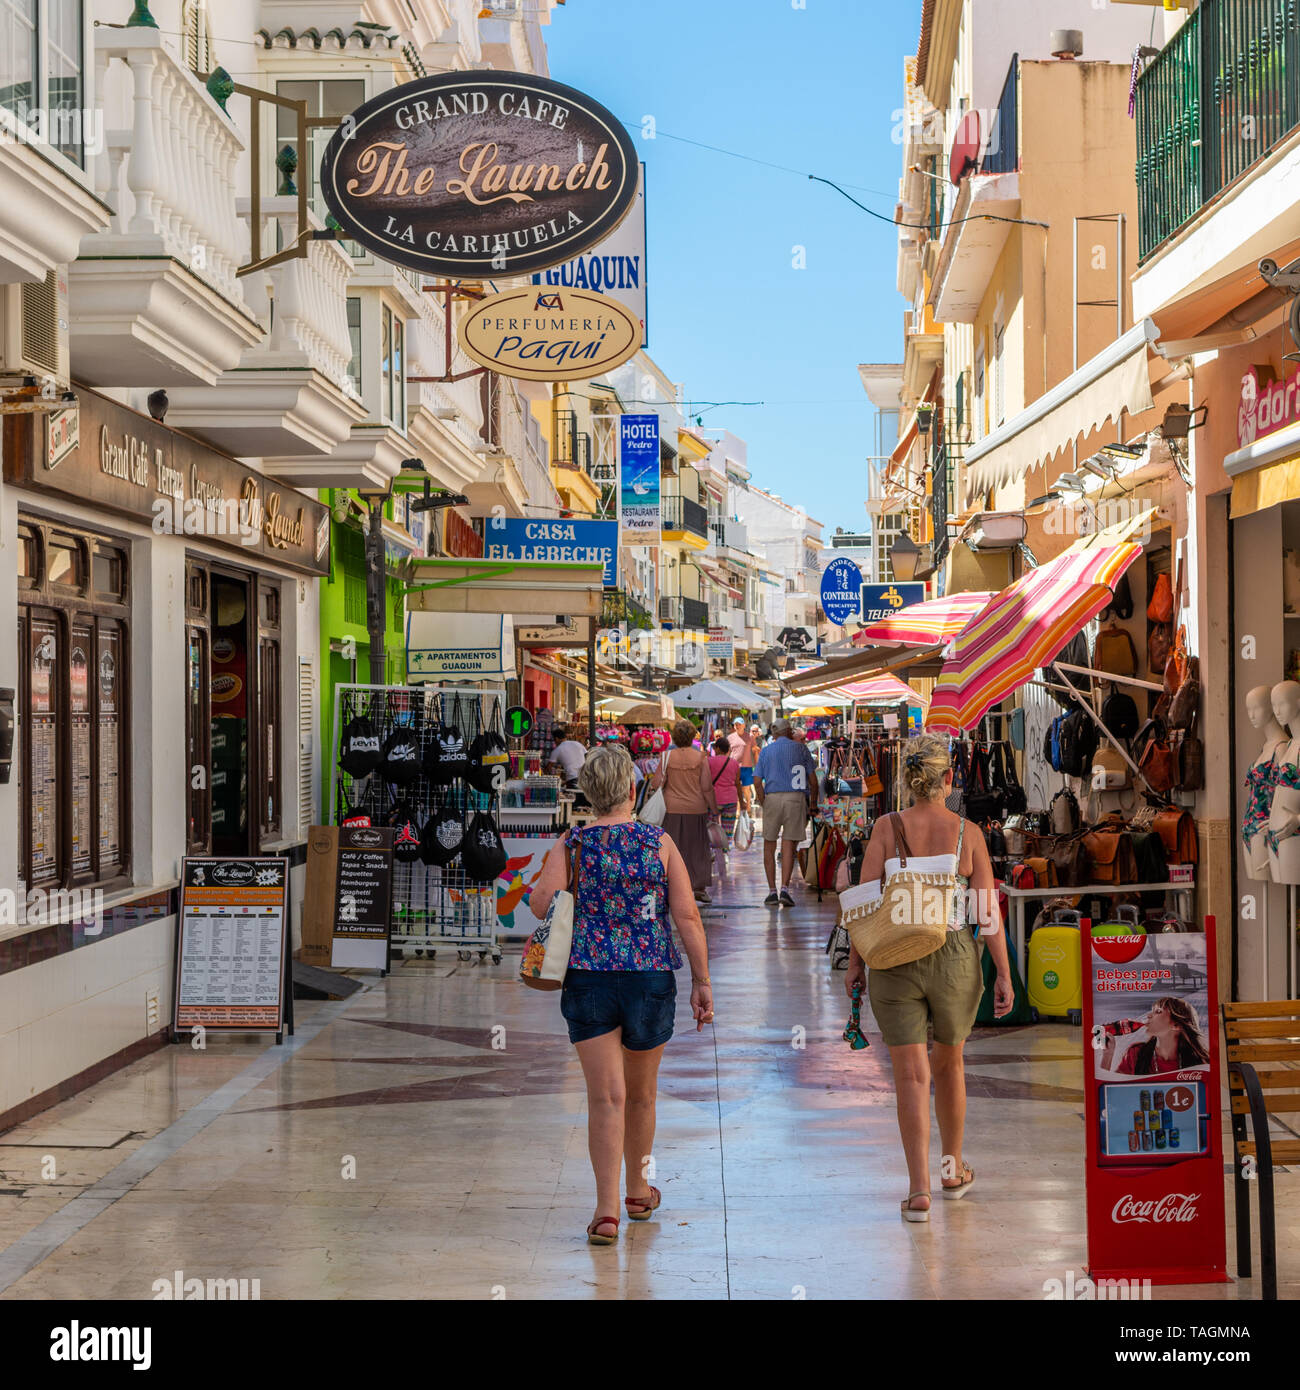 Tiendas, bares, cafés y restaurantes en una zona peatonal de La Carihuela, Torremolinos, Costa del Sol, España Foto de stock